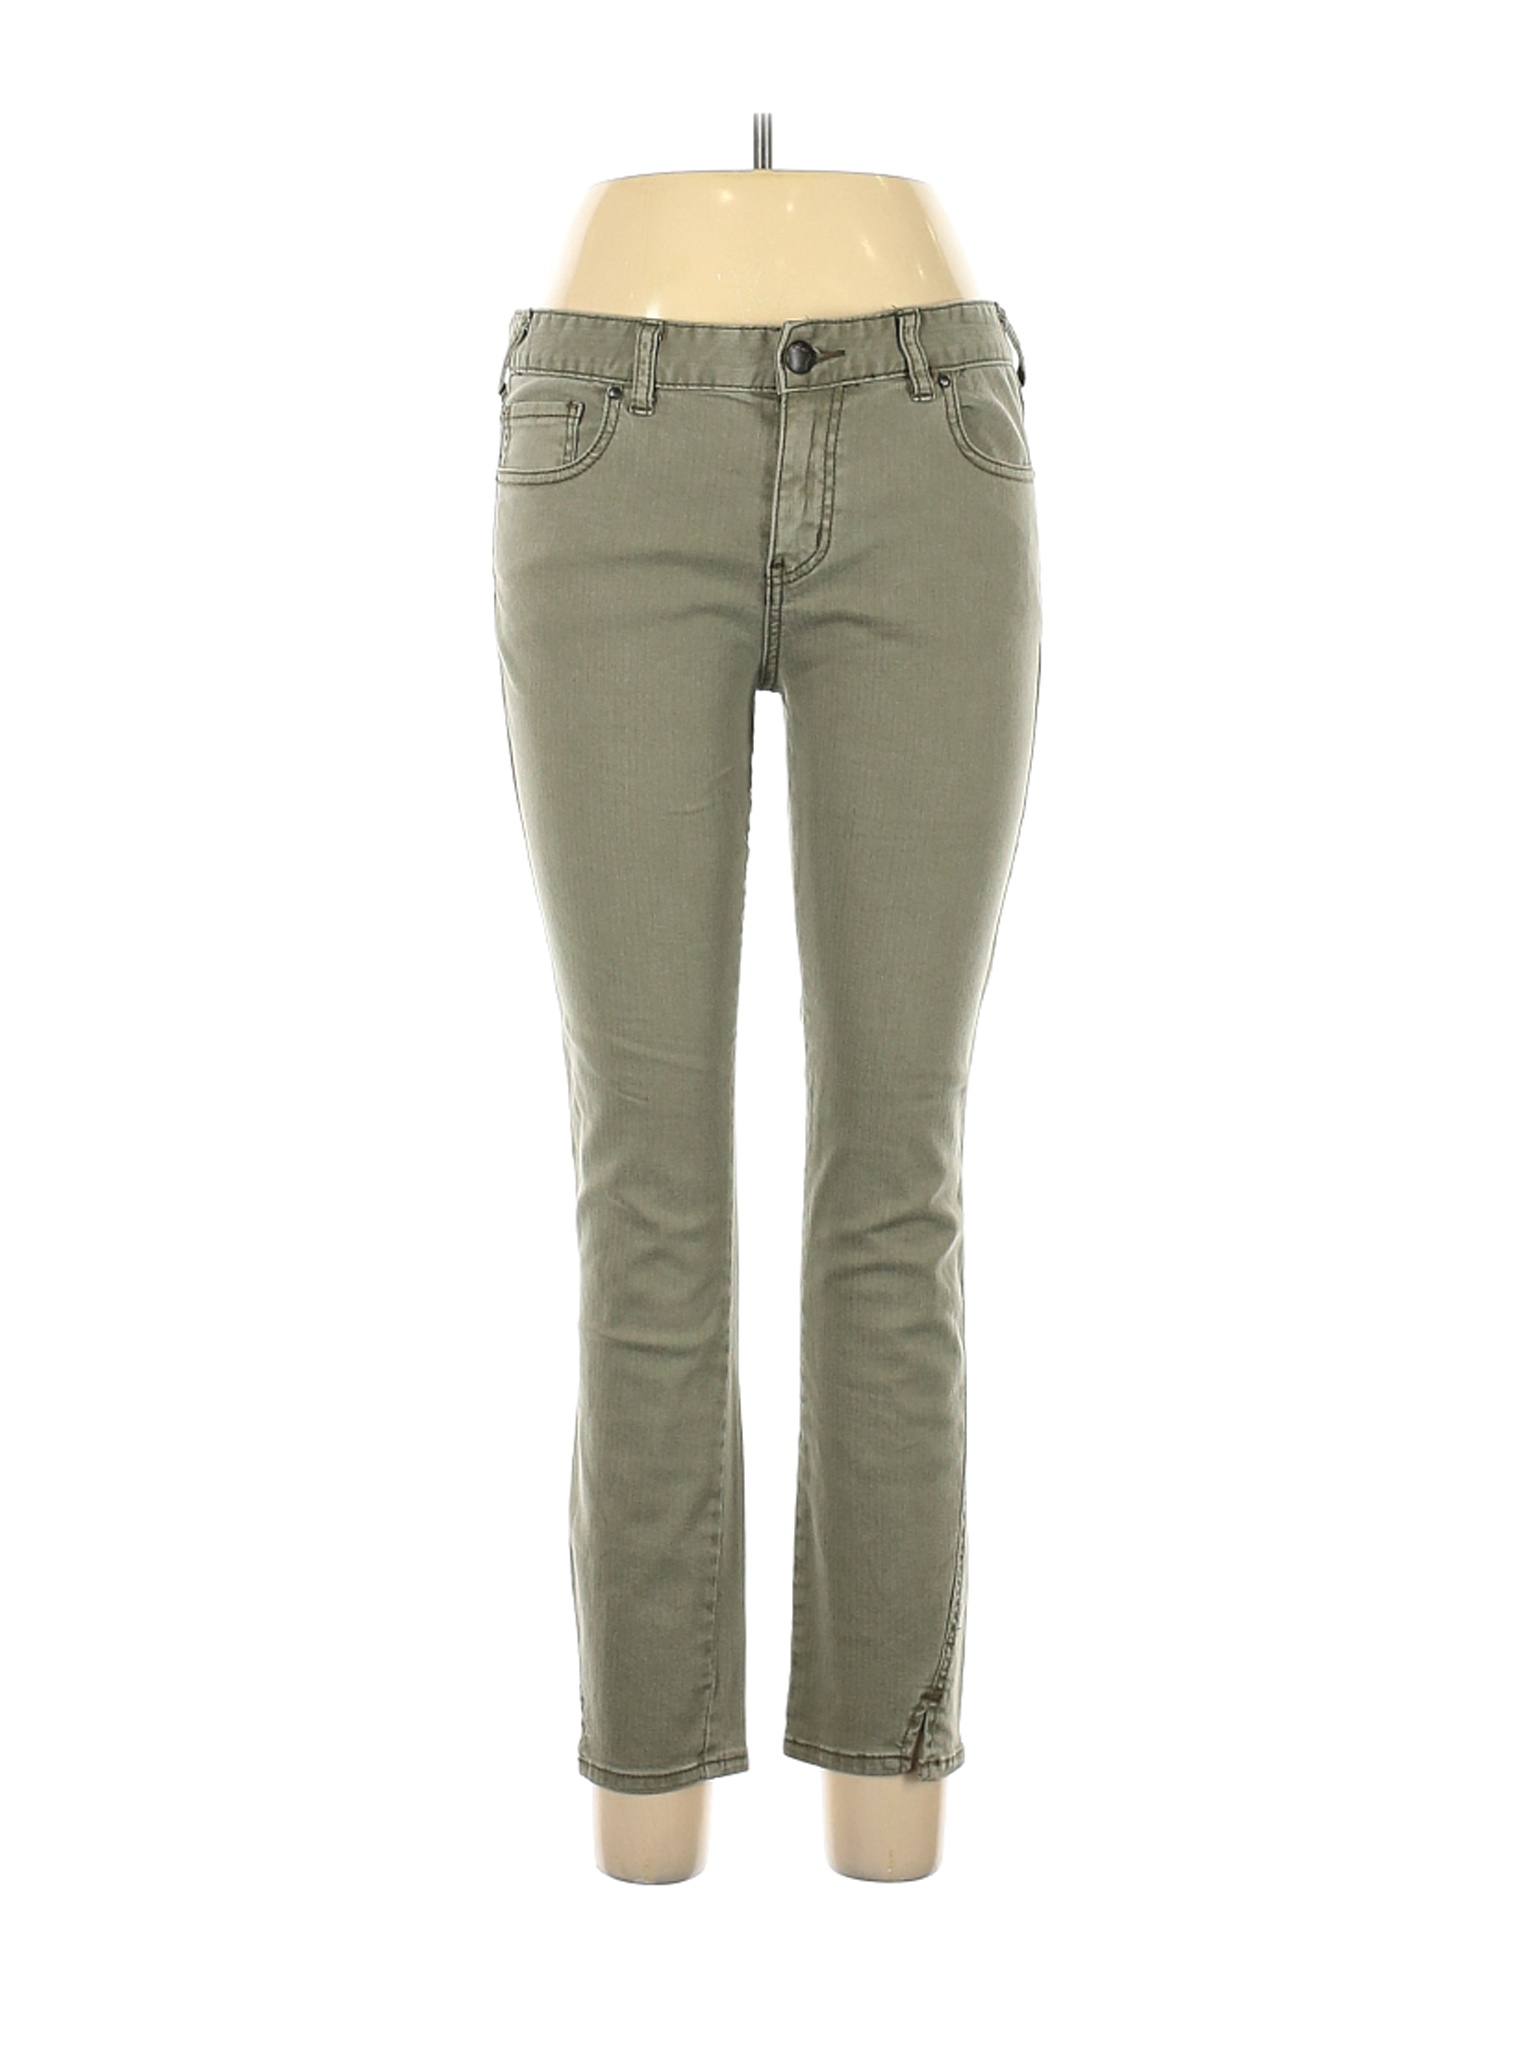 Free People Women Green Jeans 30W | eBay